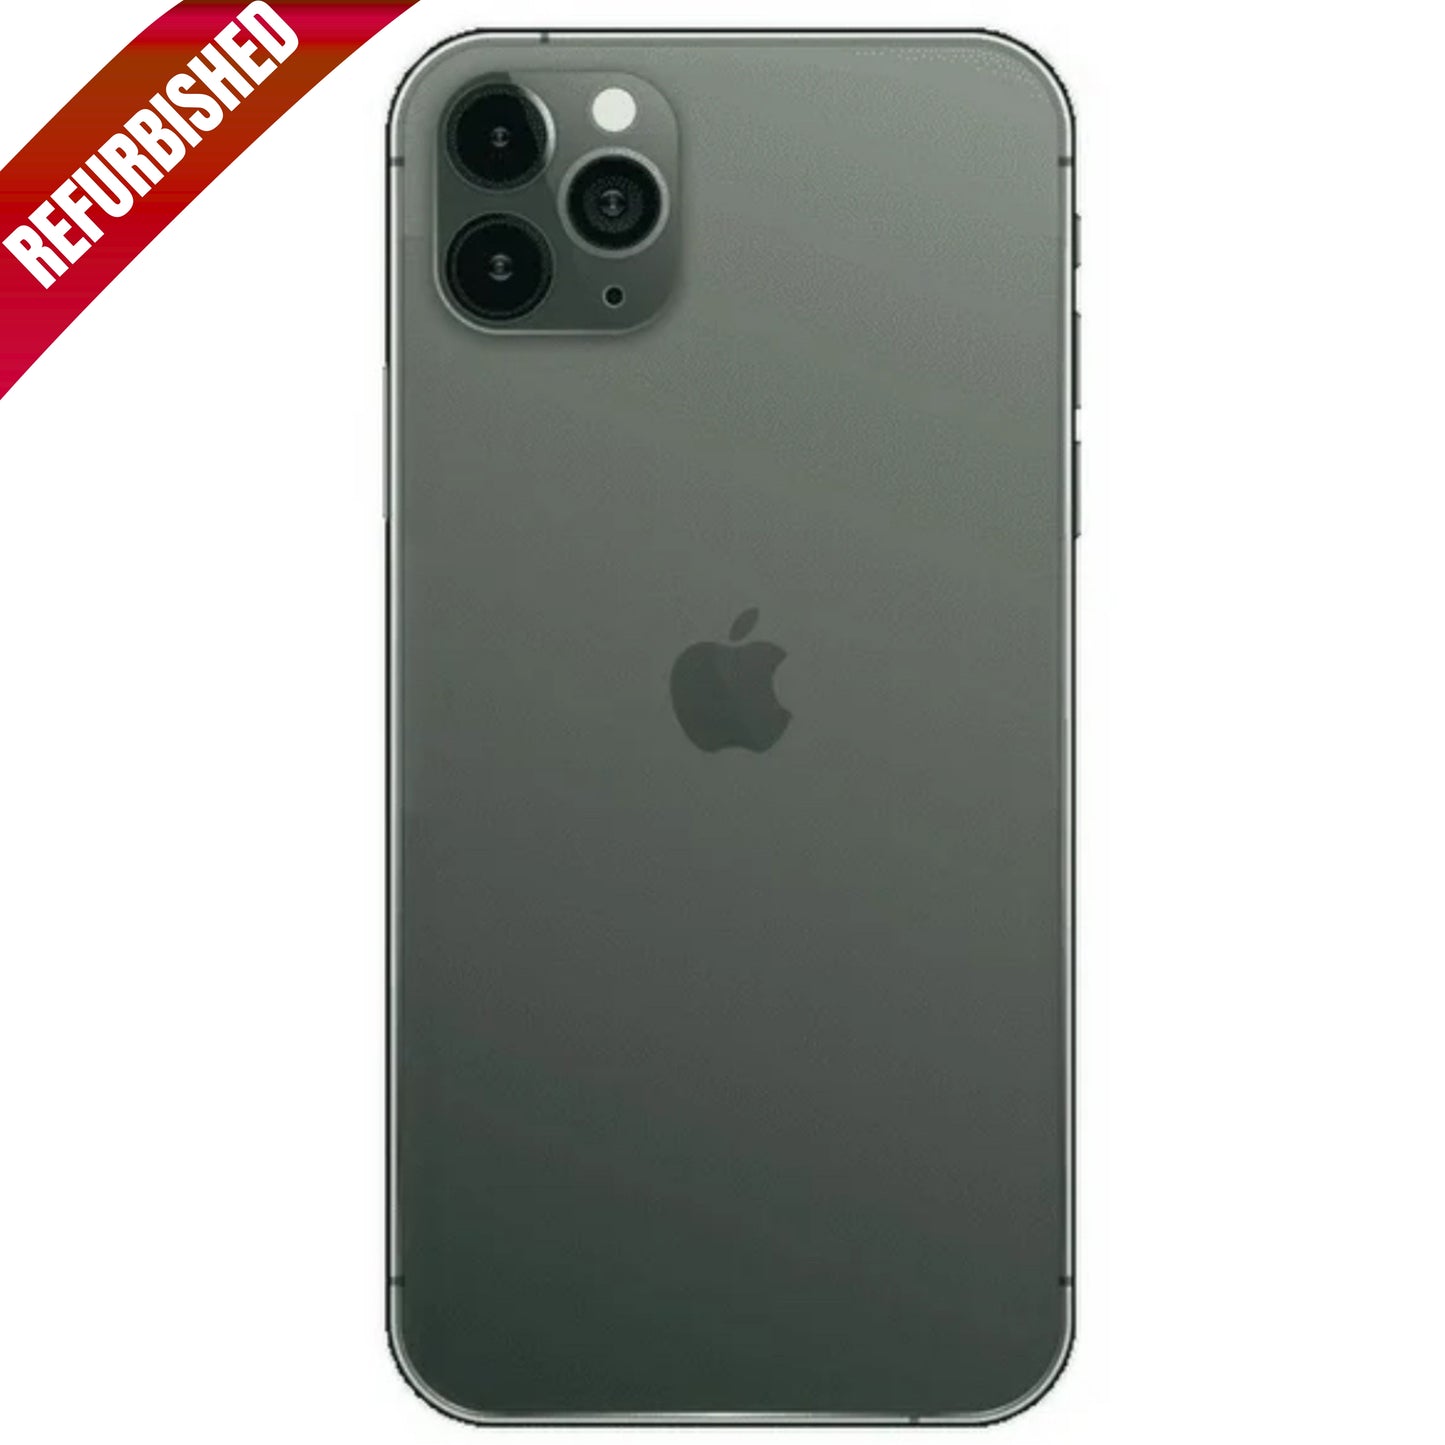 iPhone 11 Pro Max Midnight Green 256GB (Unlocked) Refurbished